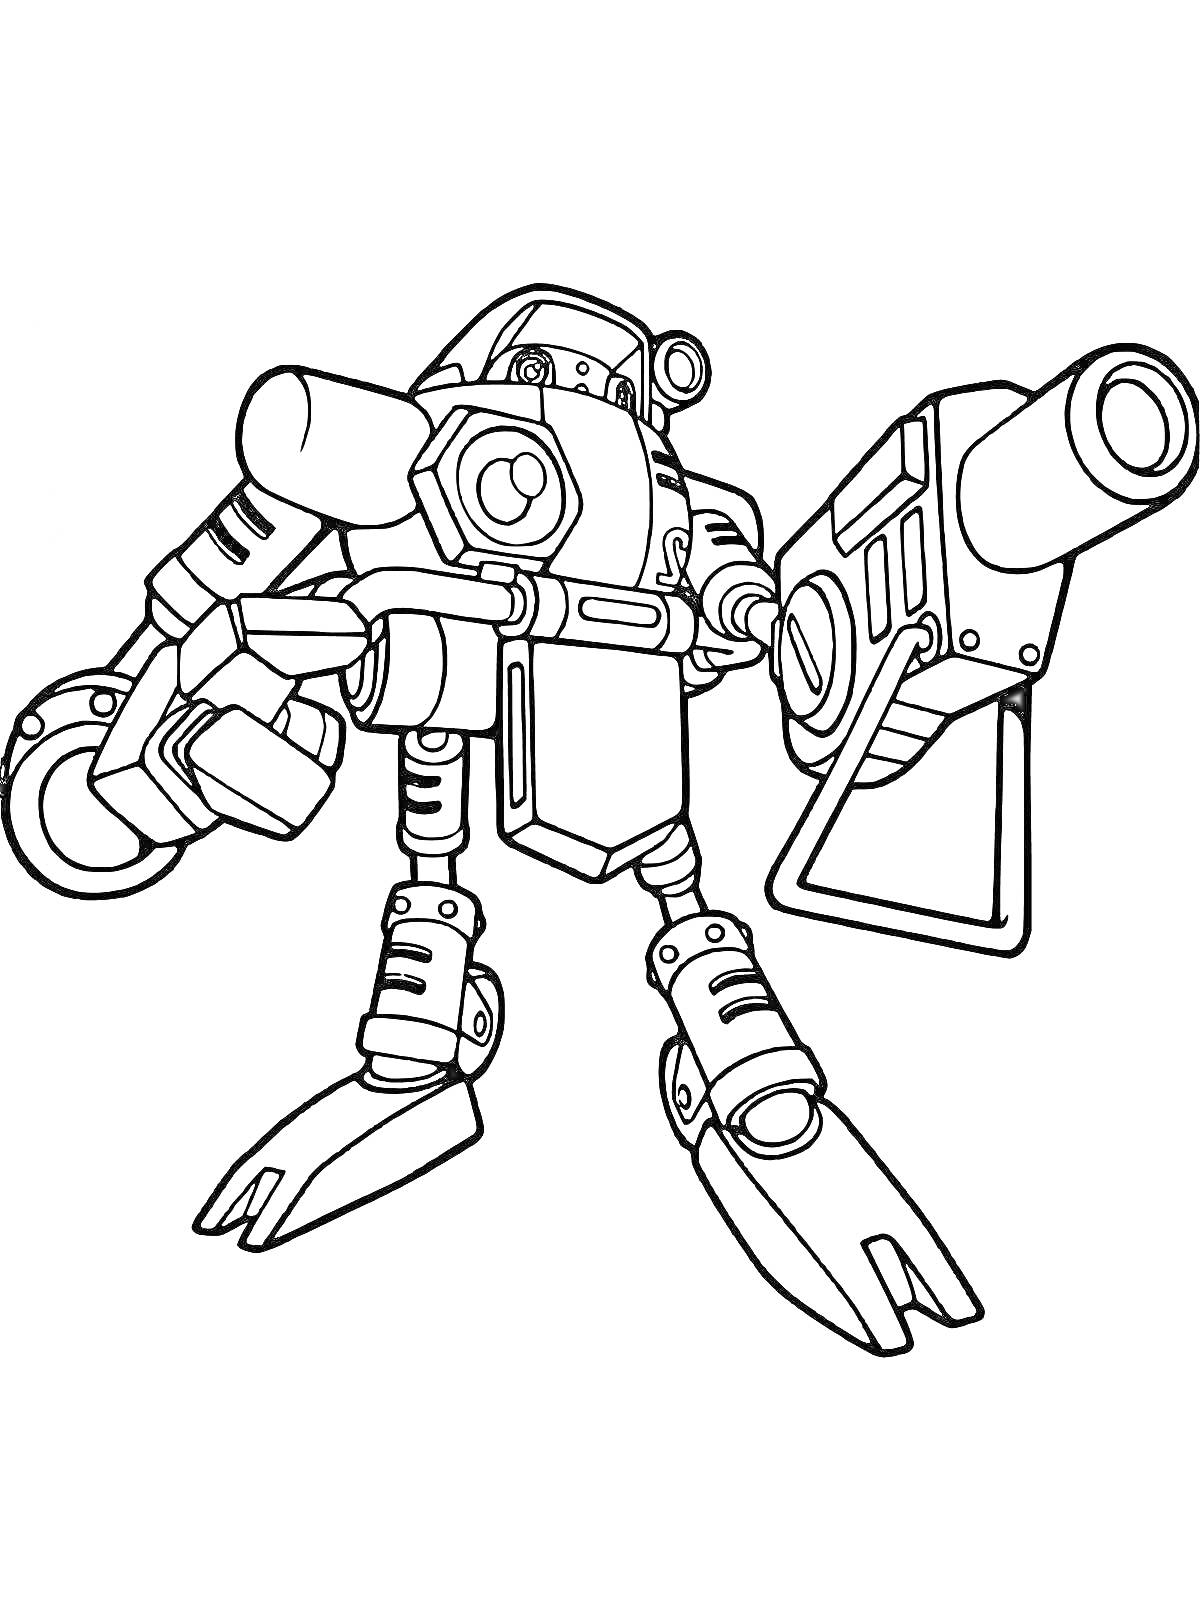 Раскраска Боевой робот с пушкой и роботизированной рукой